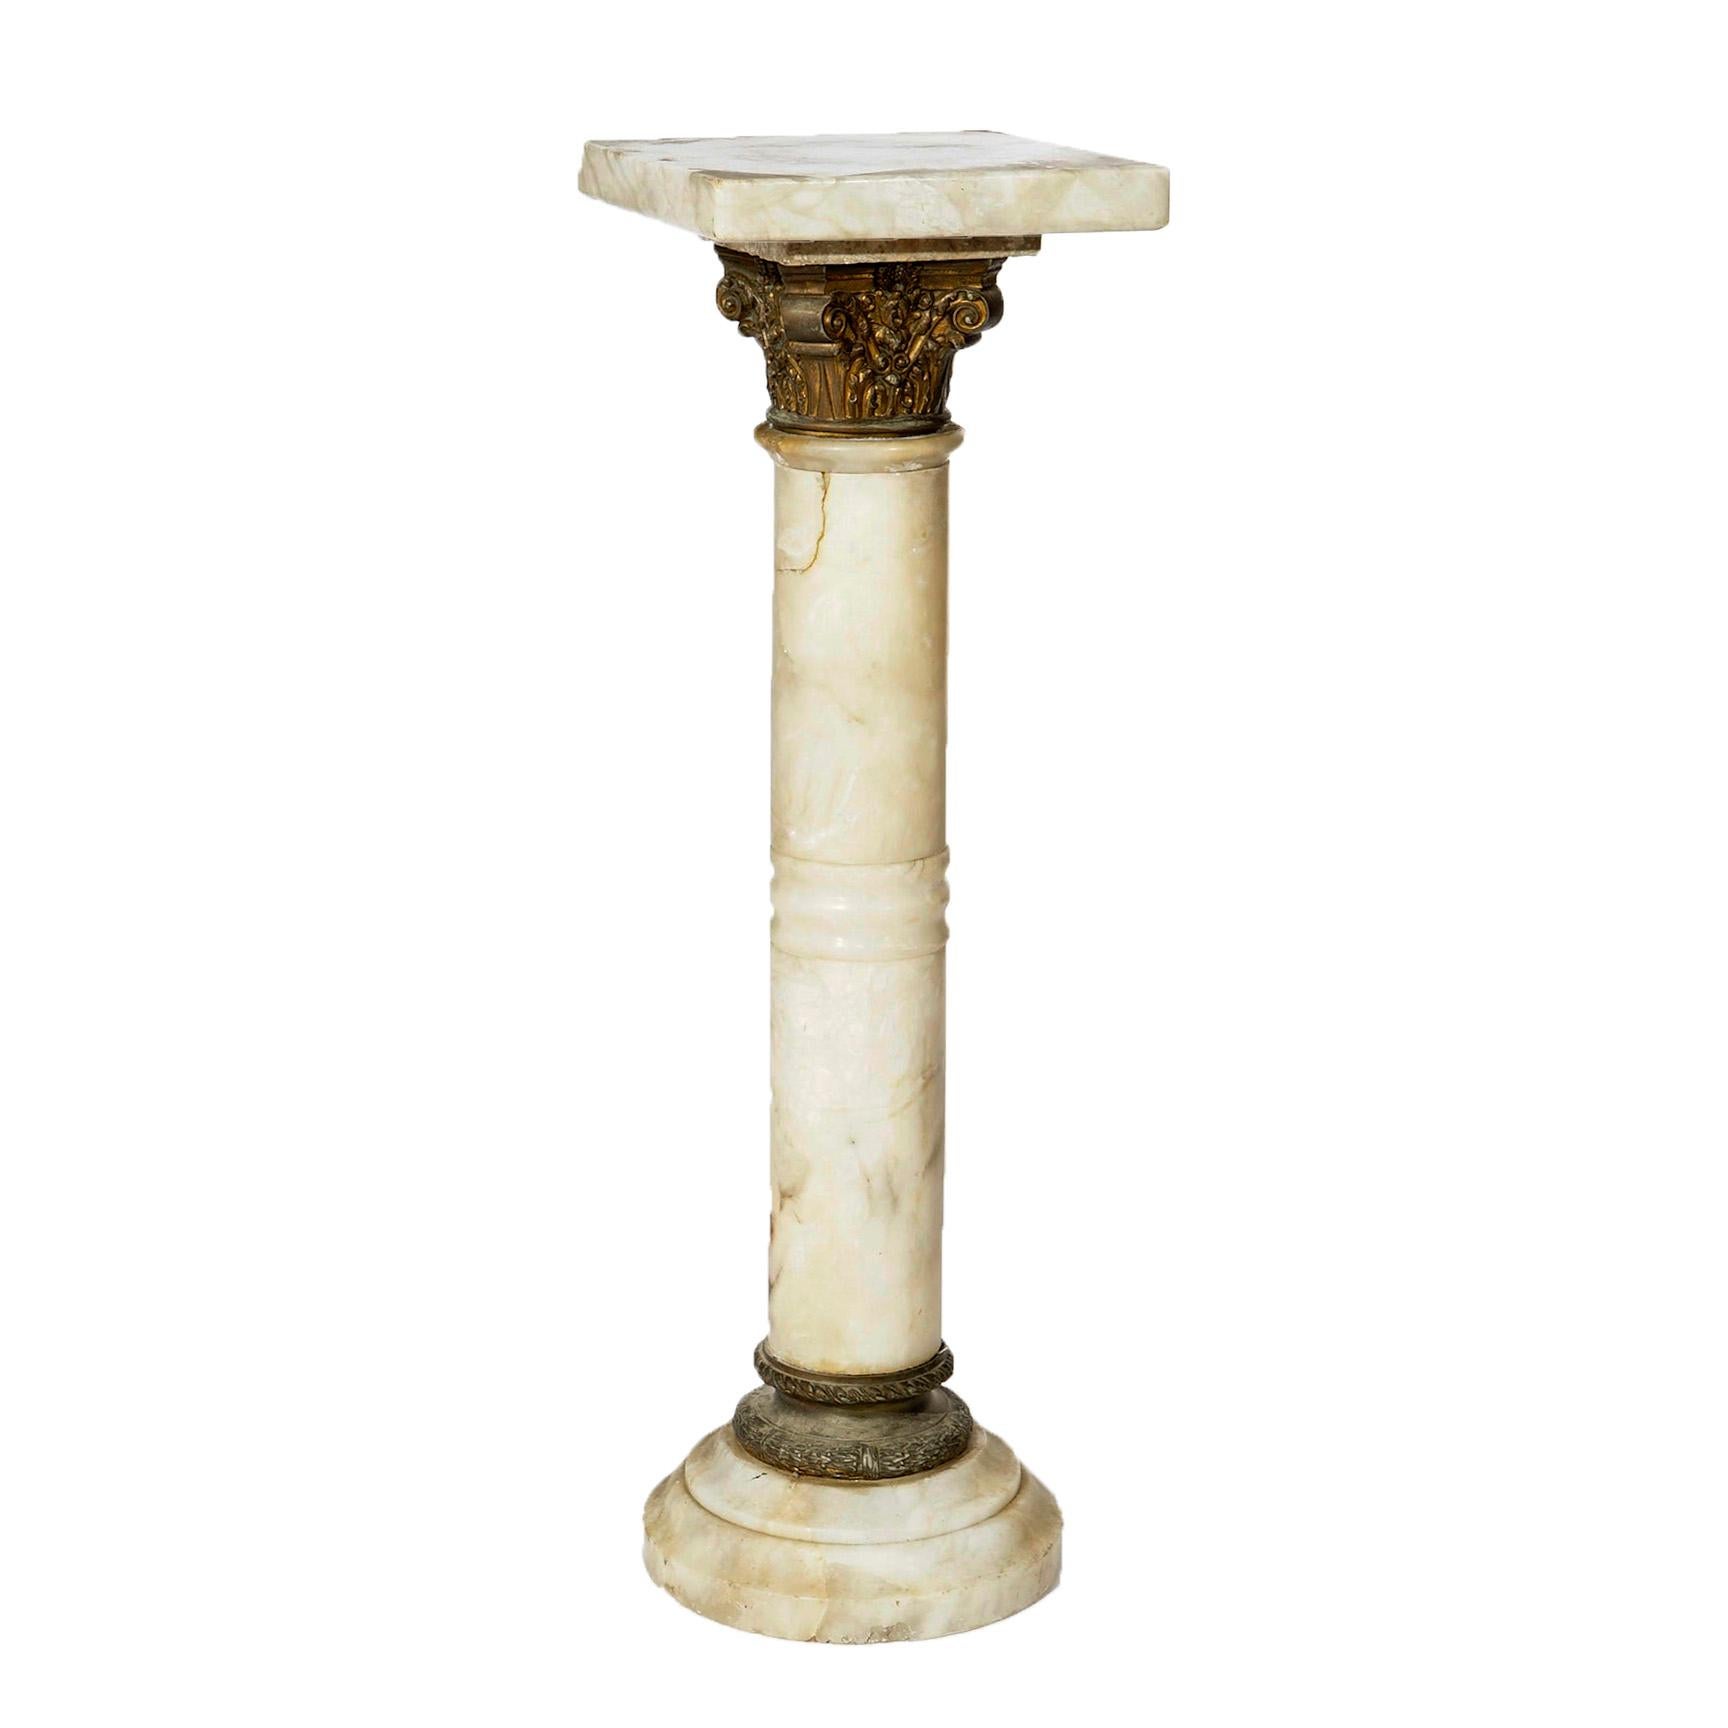 Ancien piédestal de sculpture gréco-romaine classique en marbre de forme corinthienne avec un affichage carré sur une colonne à bandeau avec des montures en bronze moulé et reposant sur une base circulaire à gradins, vers 1890.

Dimensions : 37''H